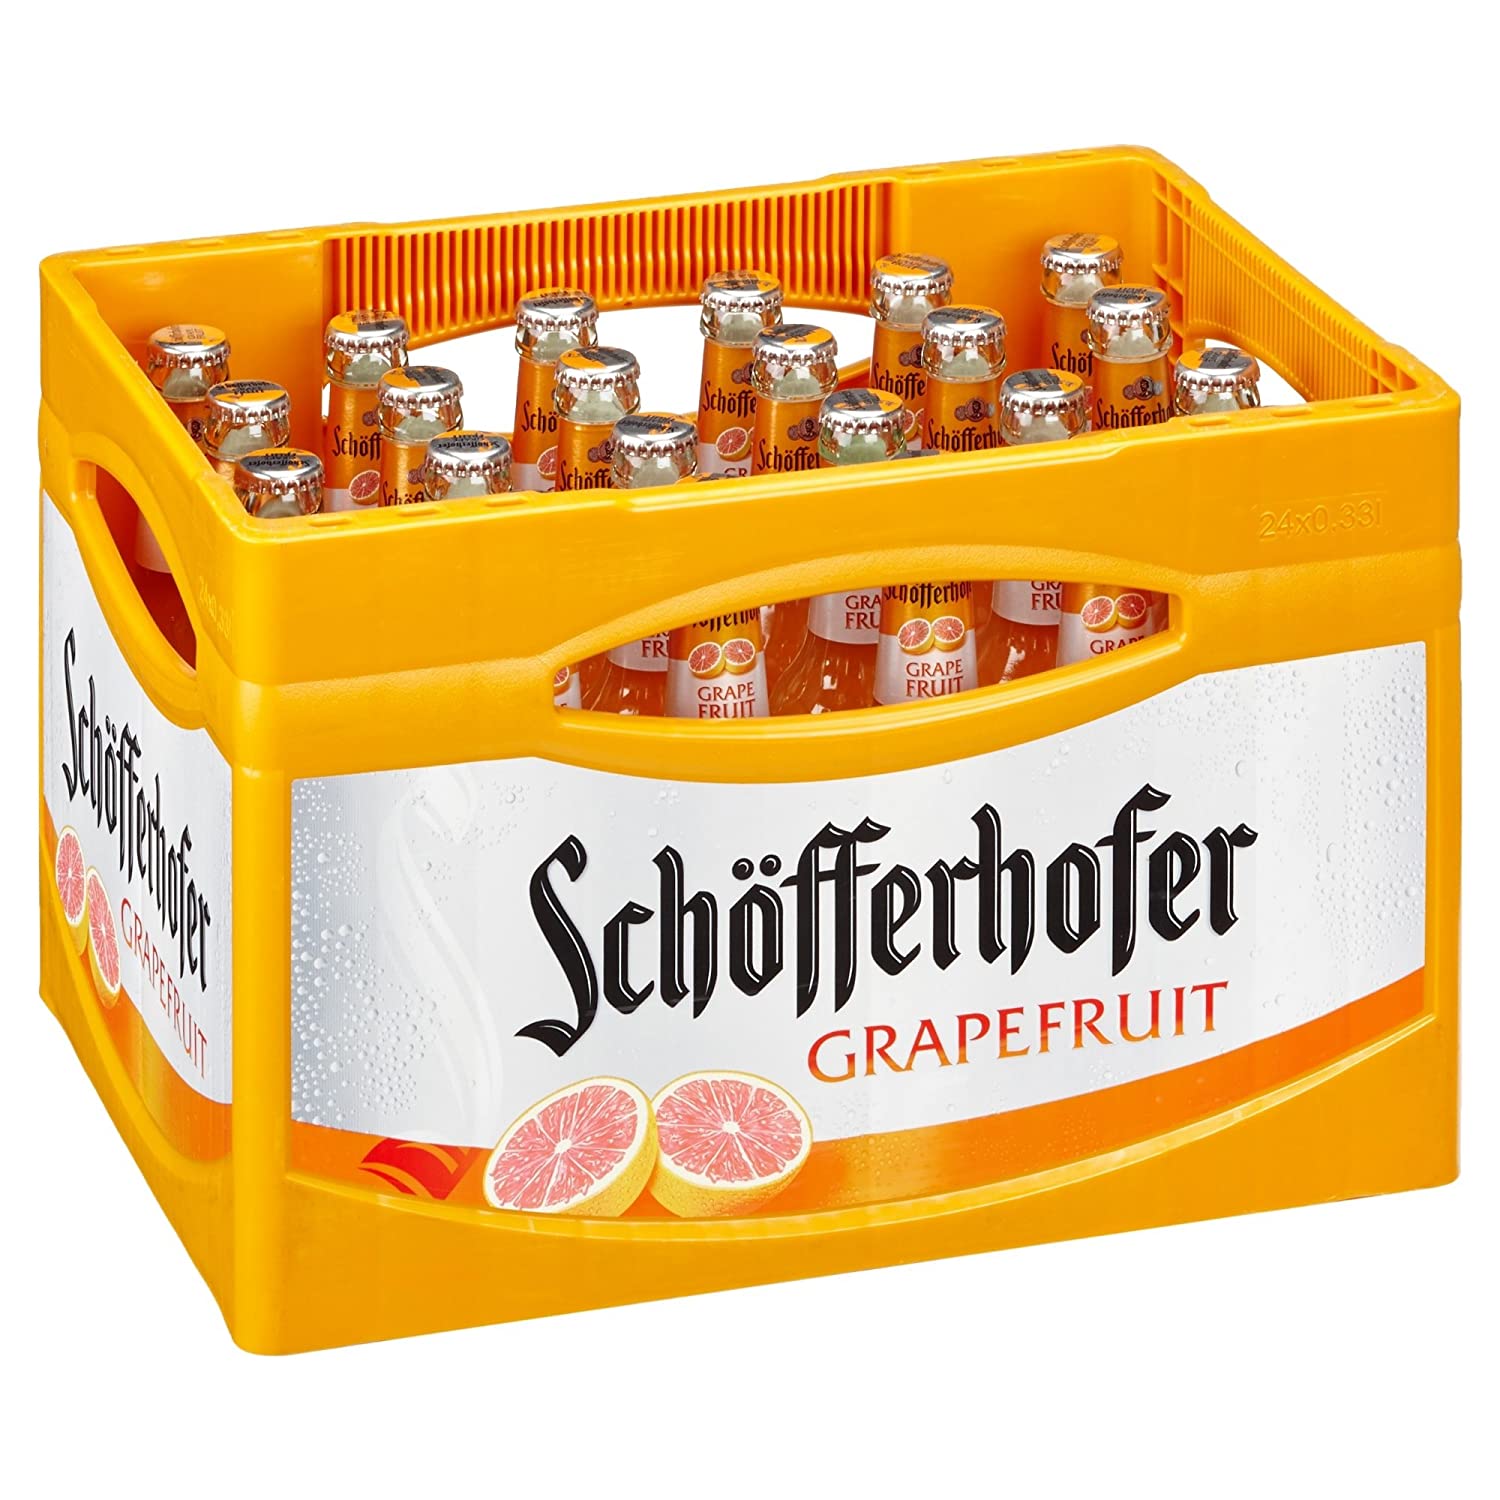 Schöfferhofer Grapefruit - Der erfrischende Mix